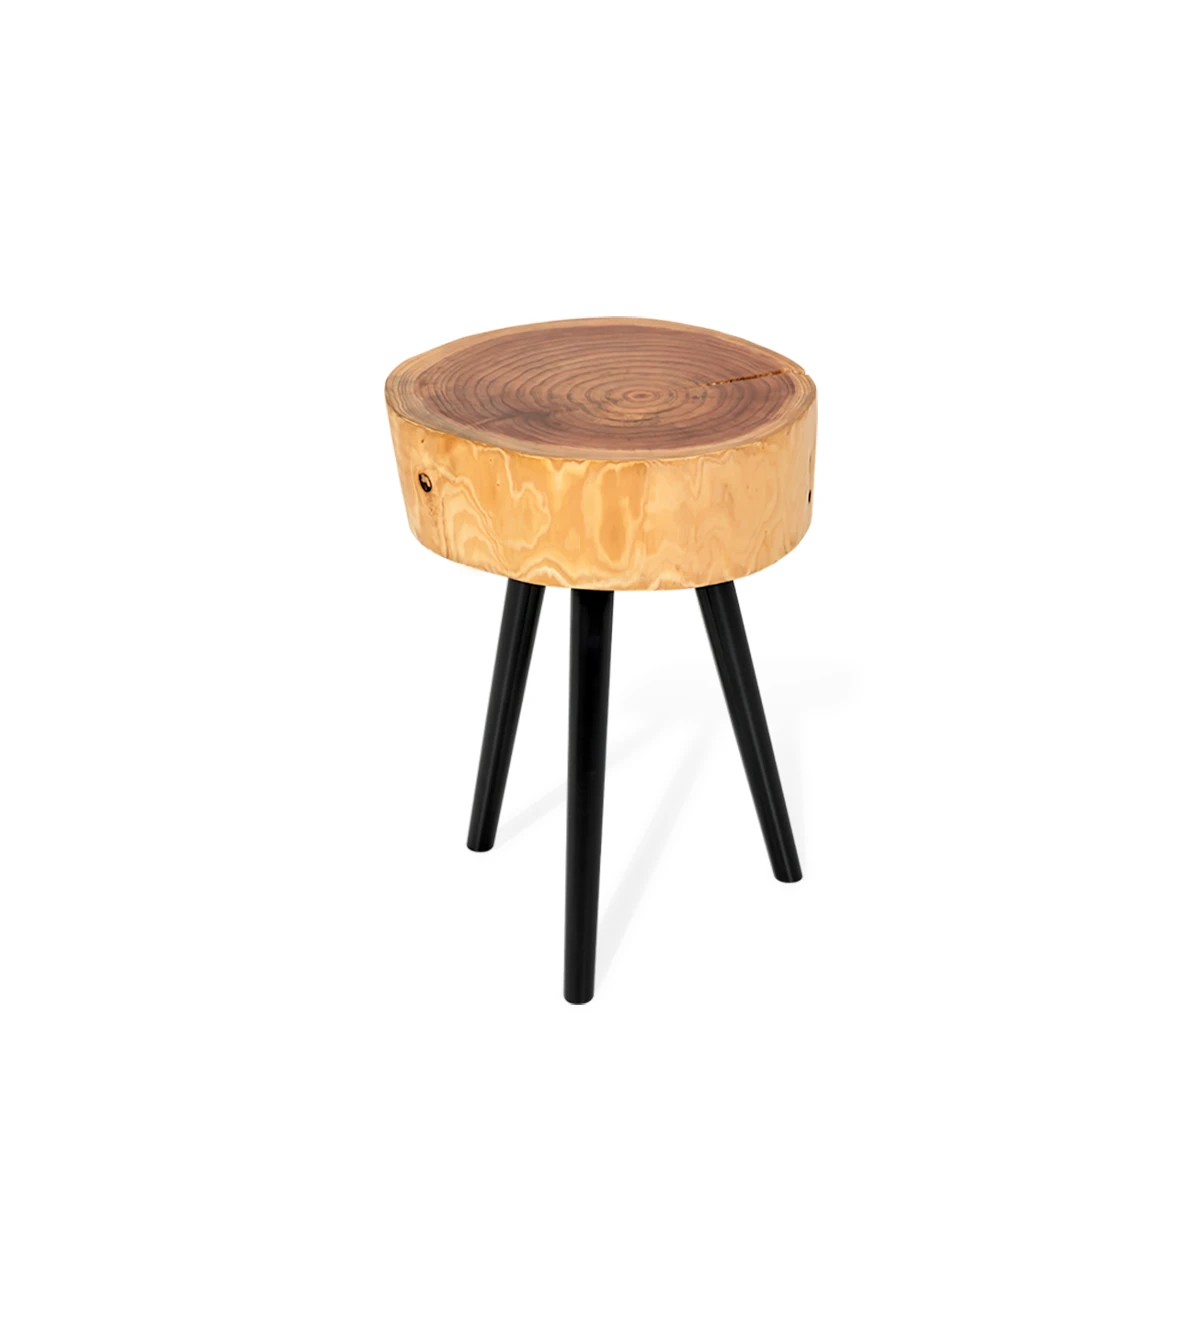 Table d'Appui Tronc en bois naturel de cryptoméria, pieds laqués noir, Ø 35 à 45 cm.